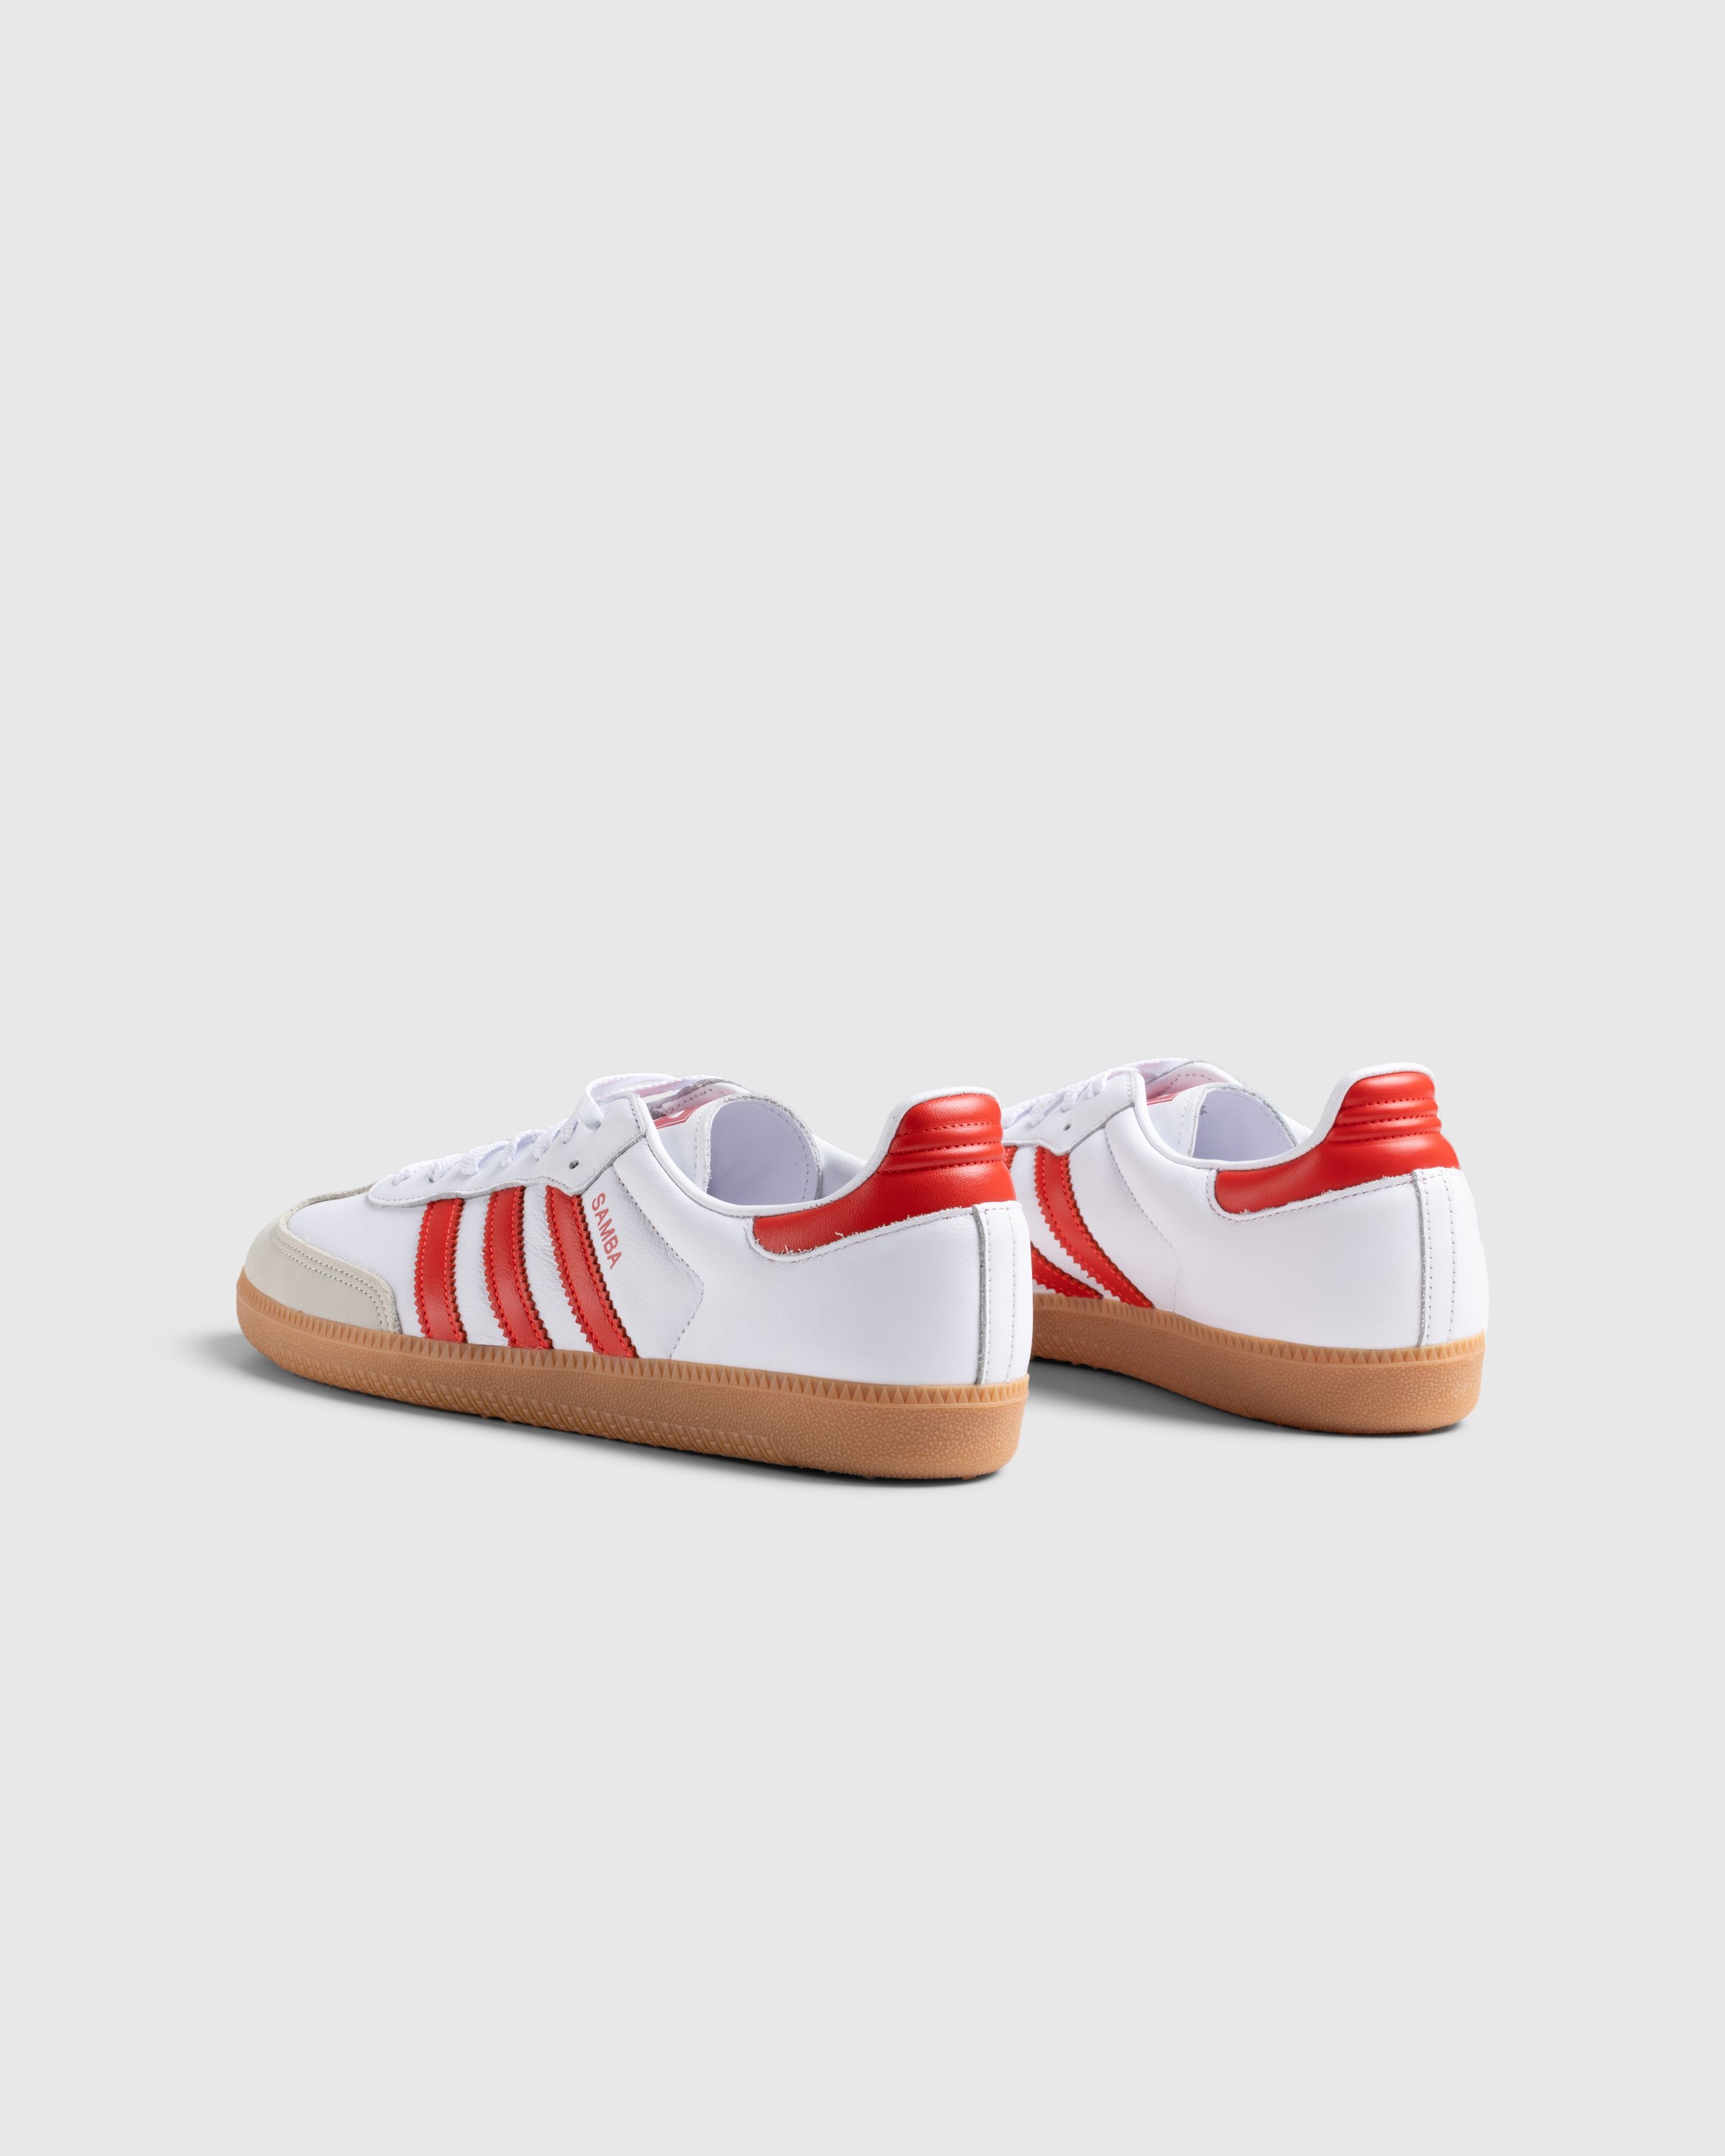 Adidas - Samba Og W          Ftwwht/Solred/Owhite - Footwear - White - Image 4